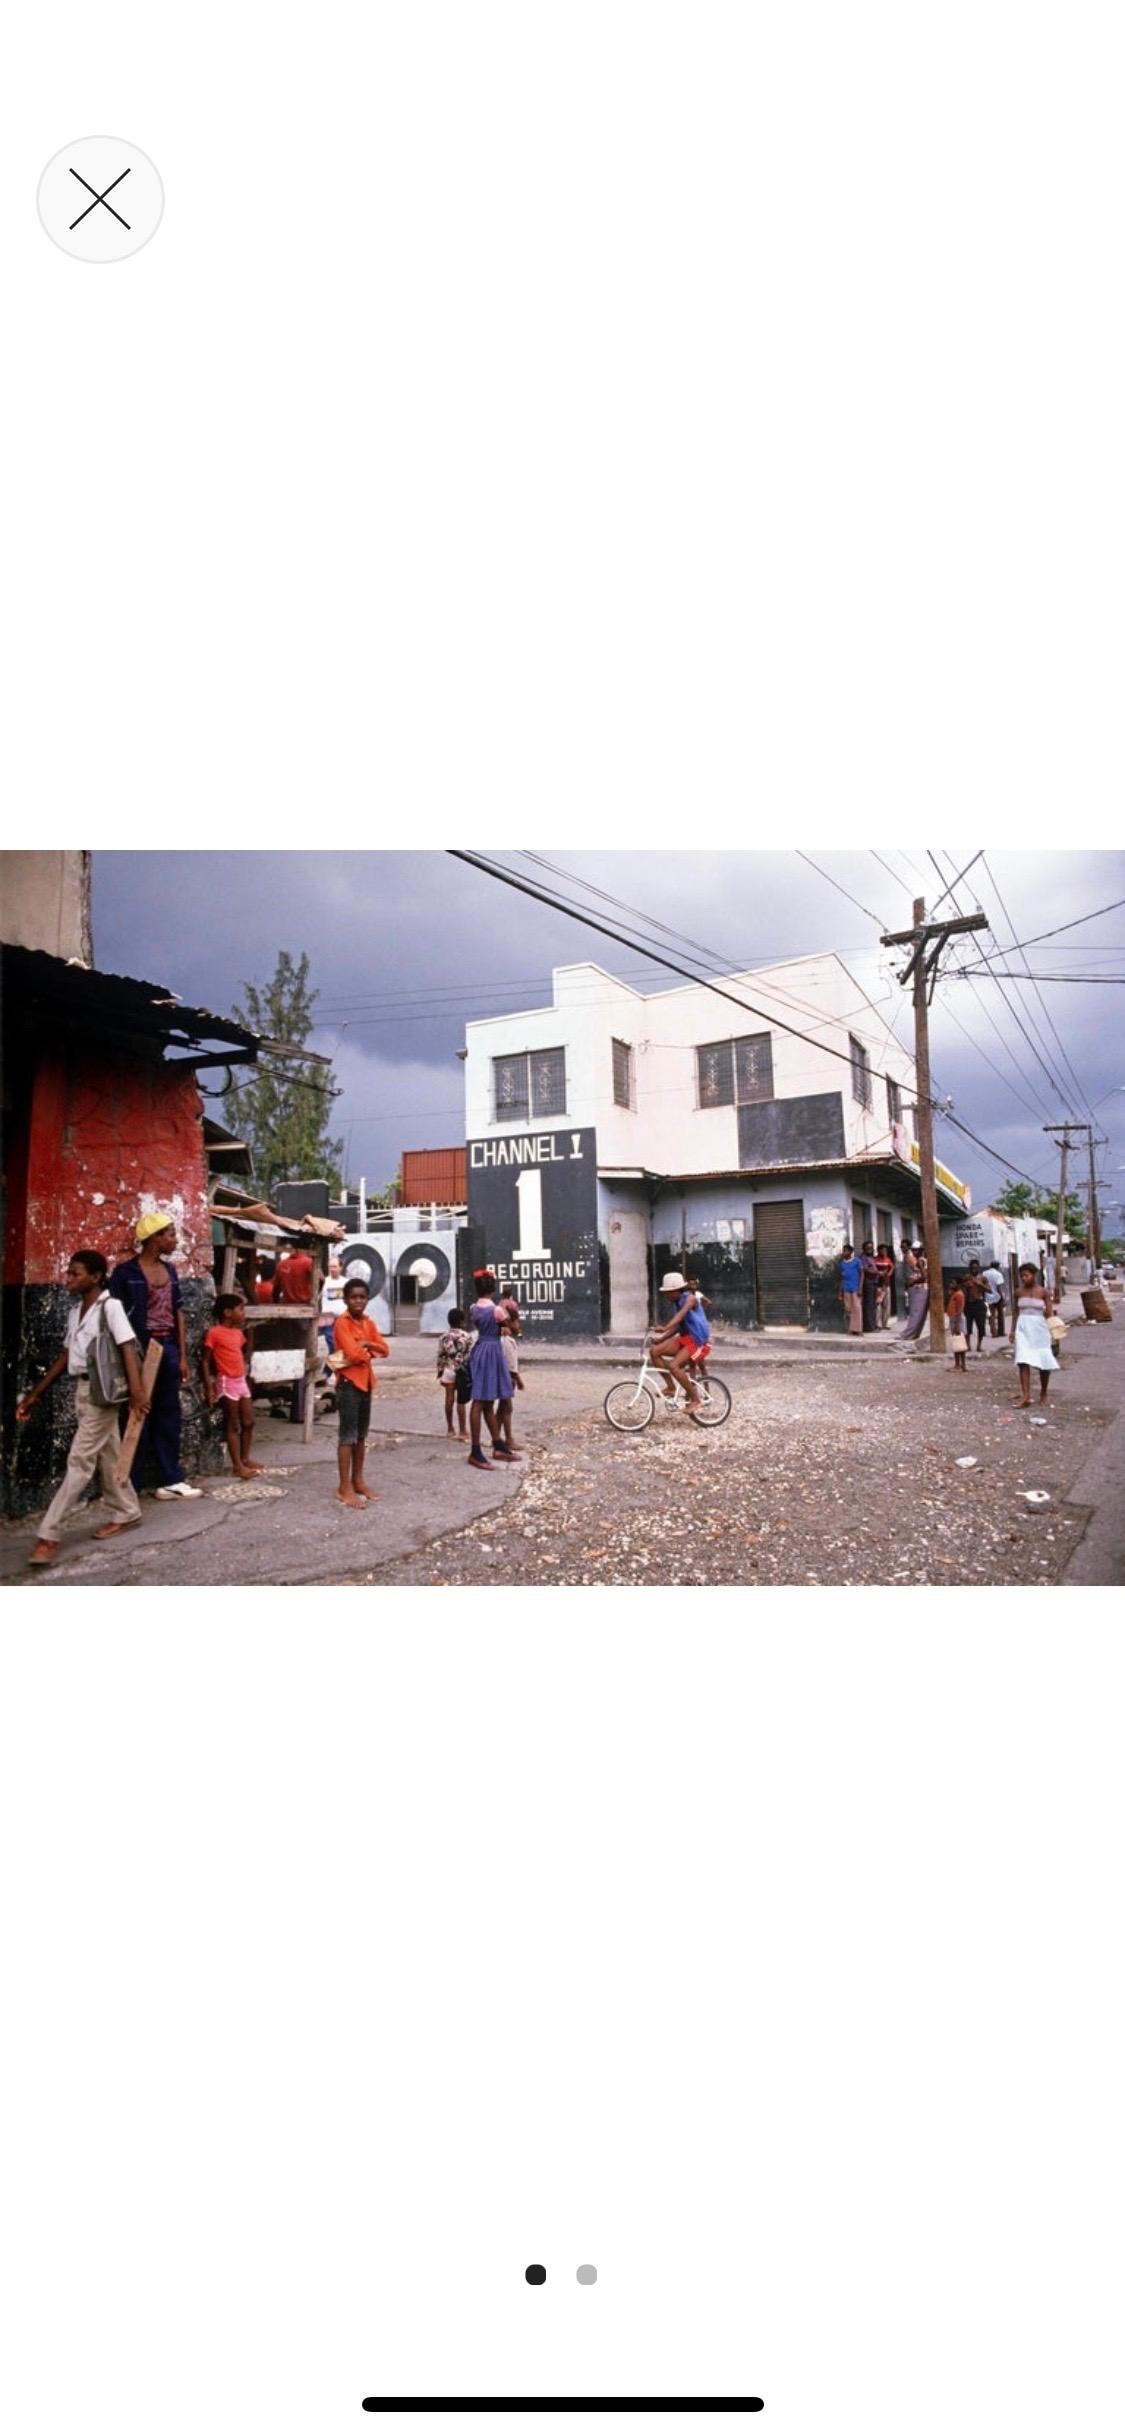 „Channel One Recording Studio Jamaica“ 1983 Limitierte Auflage Archivpigment  (Moderne), Photograph, von Alain Le Garsmeur